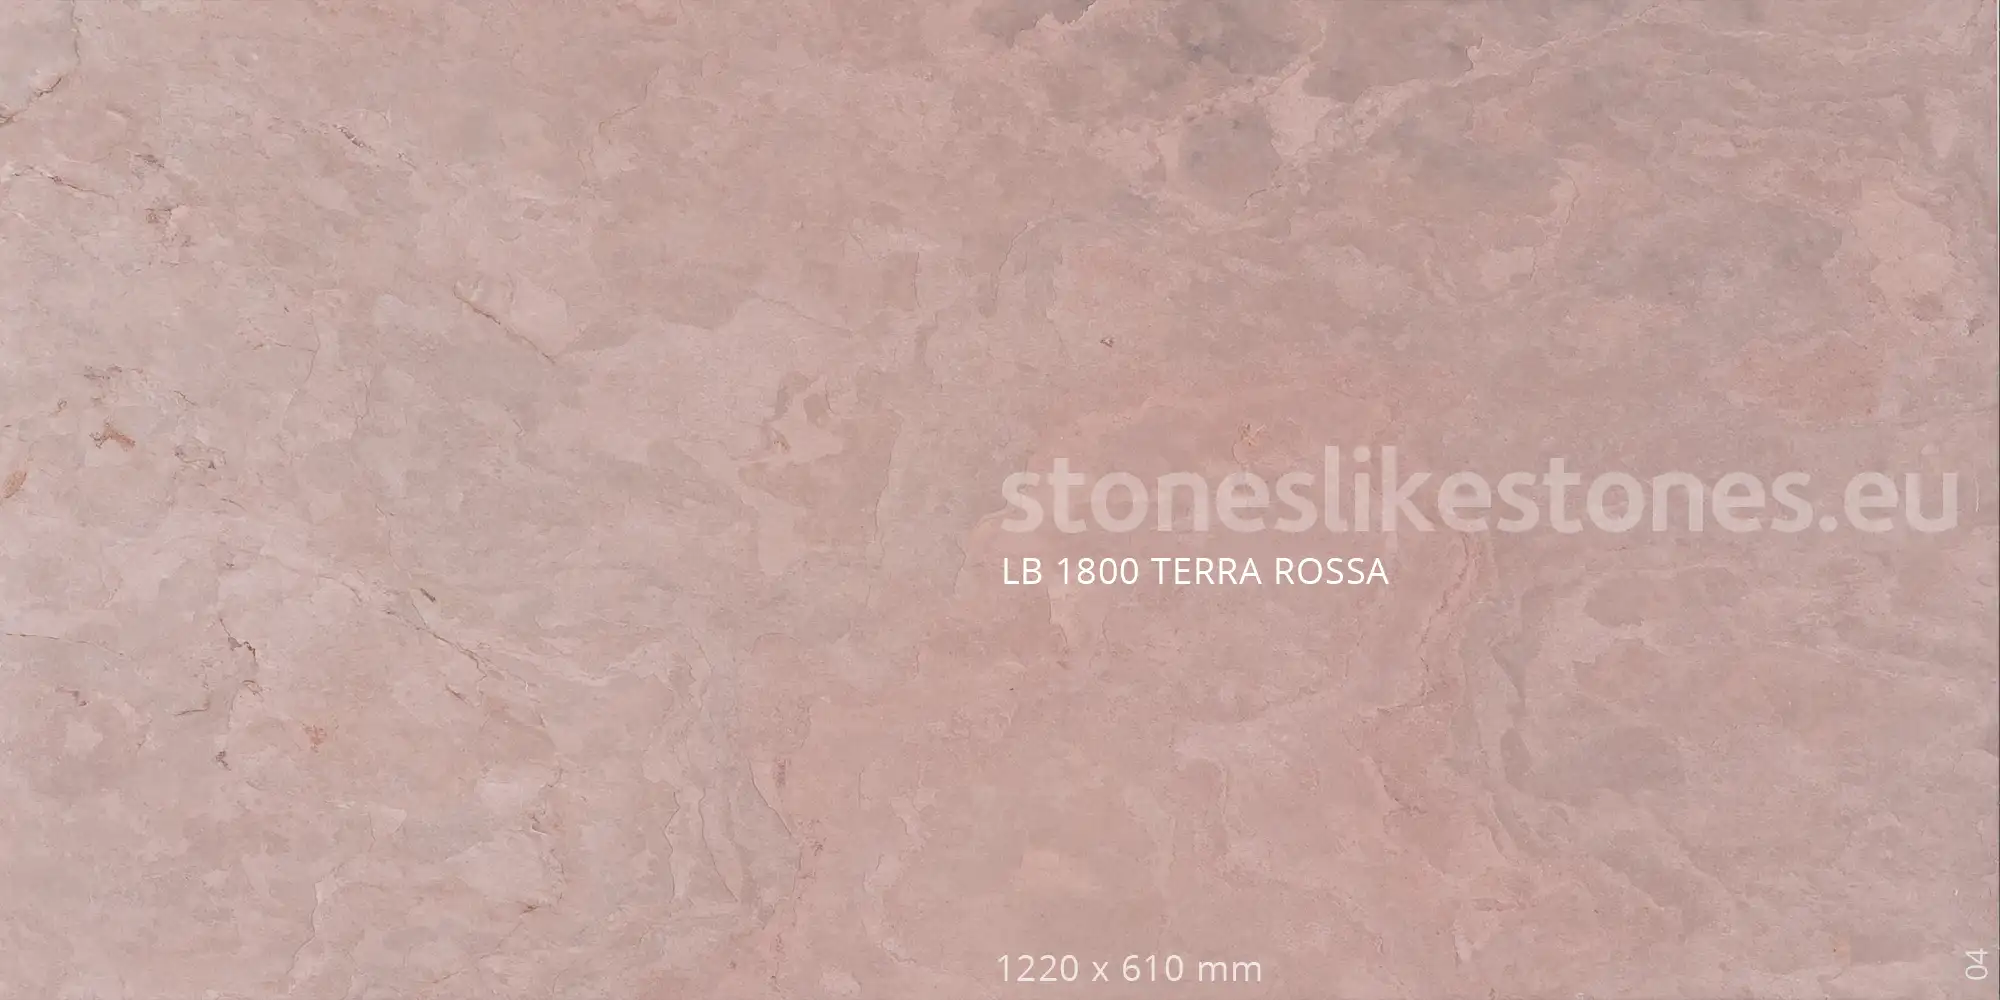 StoneslikeStones Dünnschiefer LB1800 TERRA ROSSA Buntschiefer Abb 04 – Download mit Rechtsklick